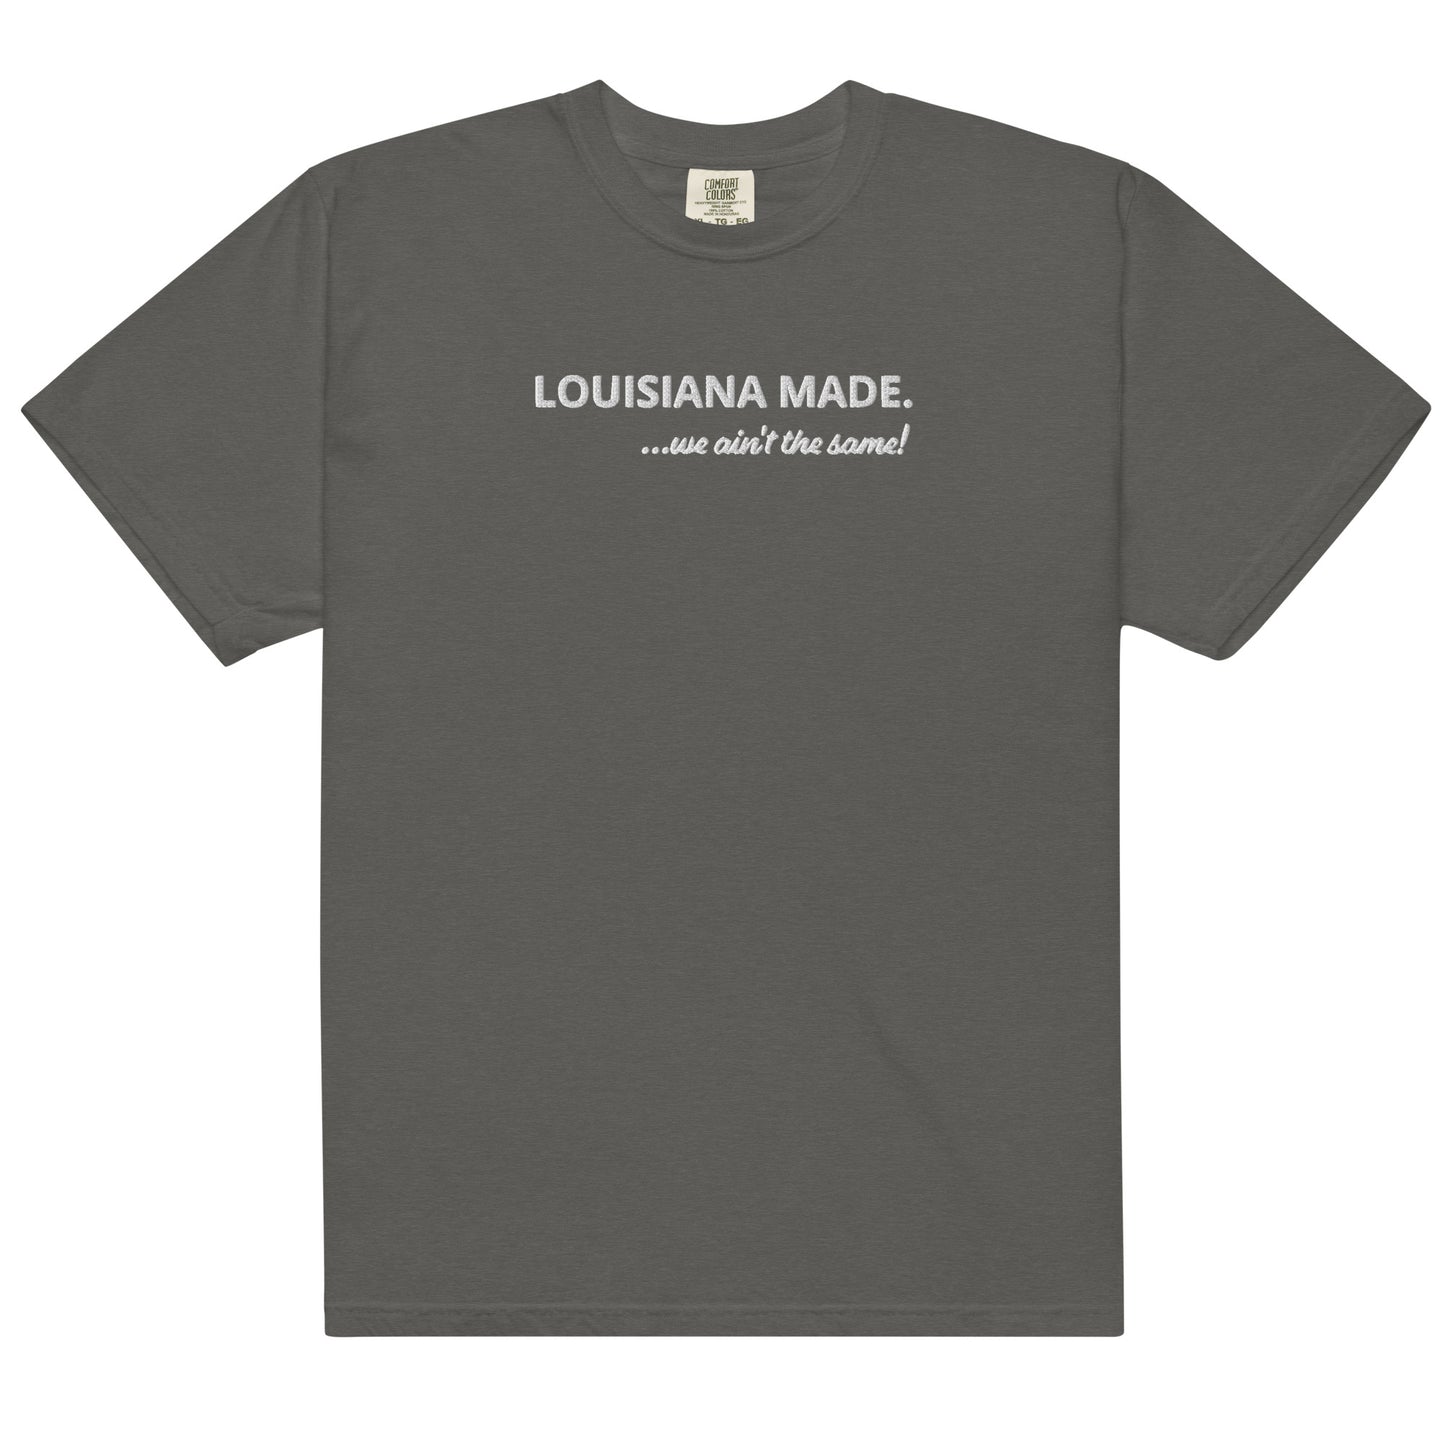 Louisiana Made heavyweight t-shirt